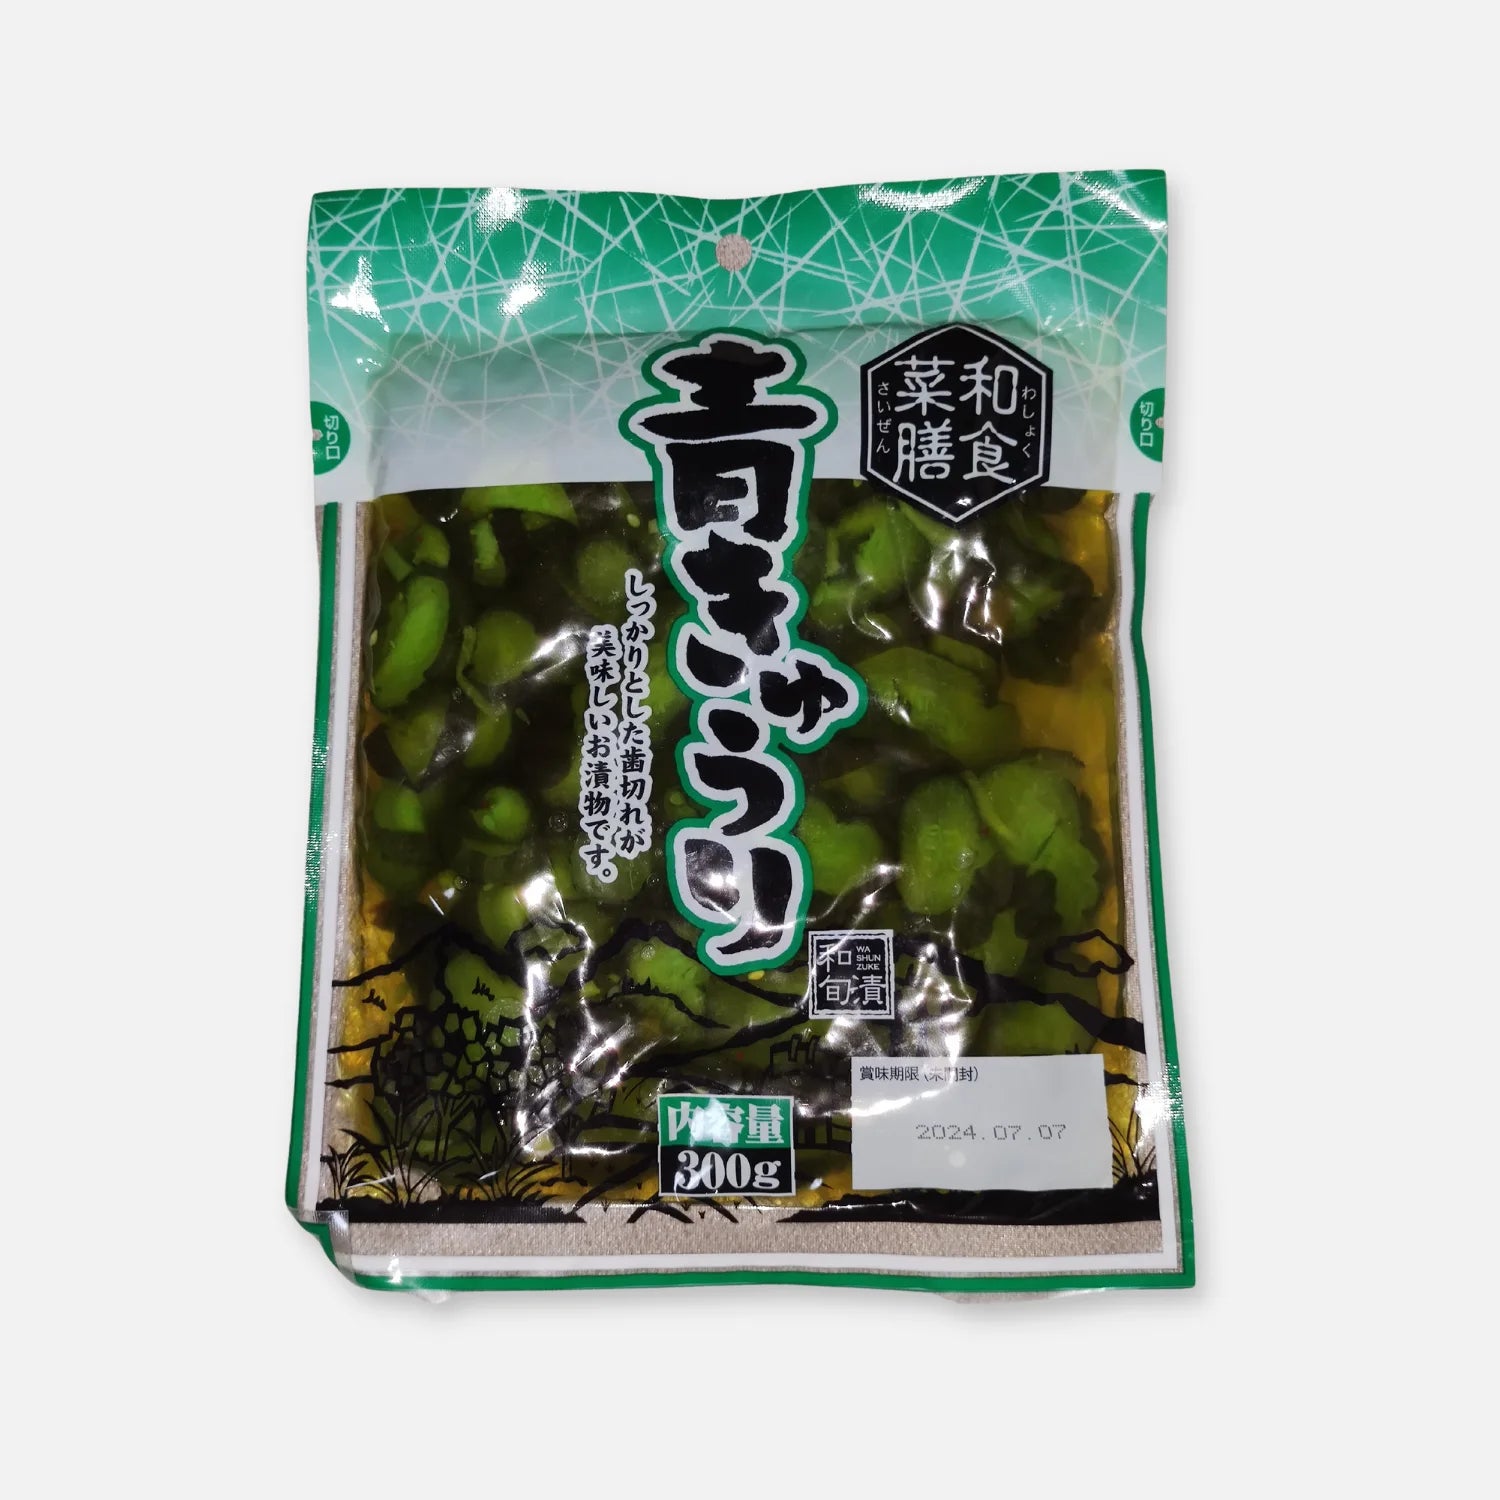 Washoku Saizen Pickled Green Cucumber 300g - Buy Me Japan